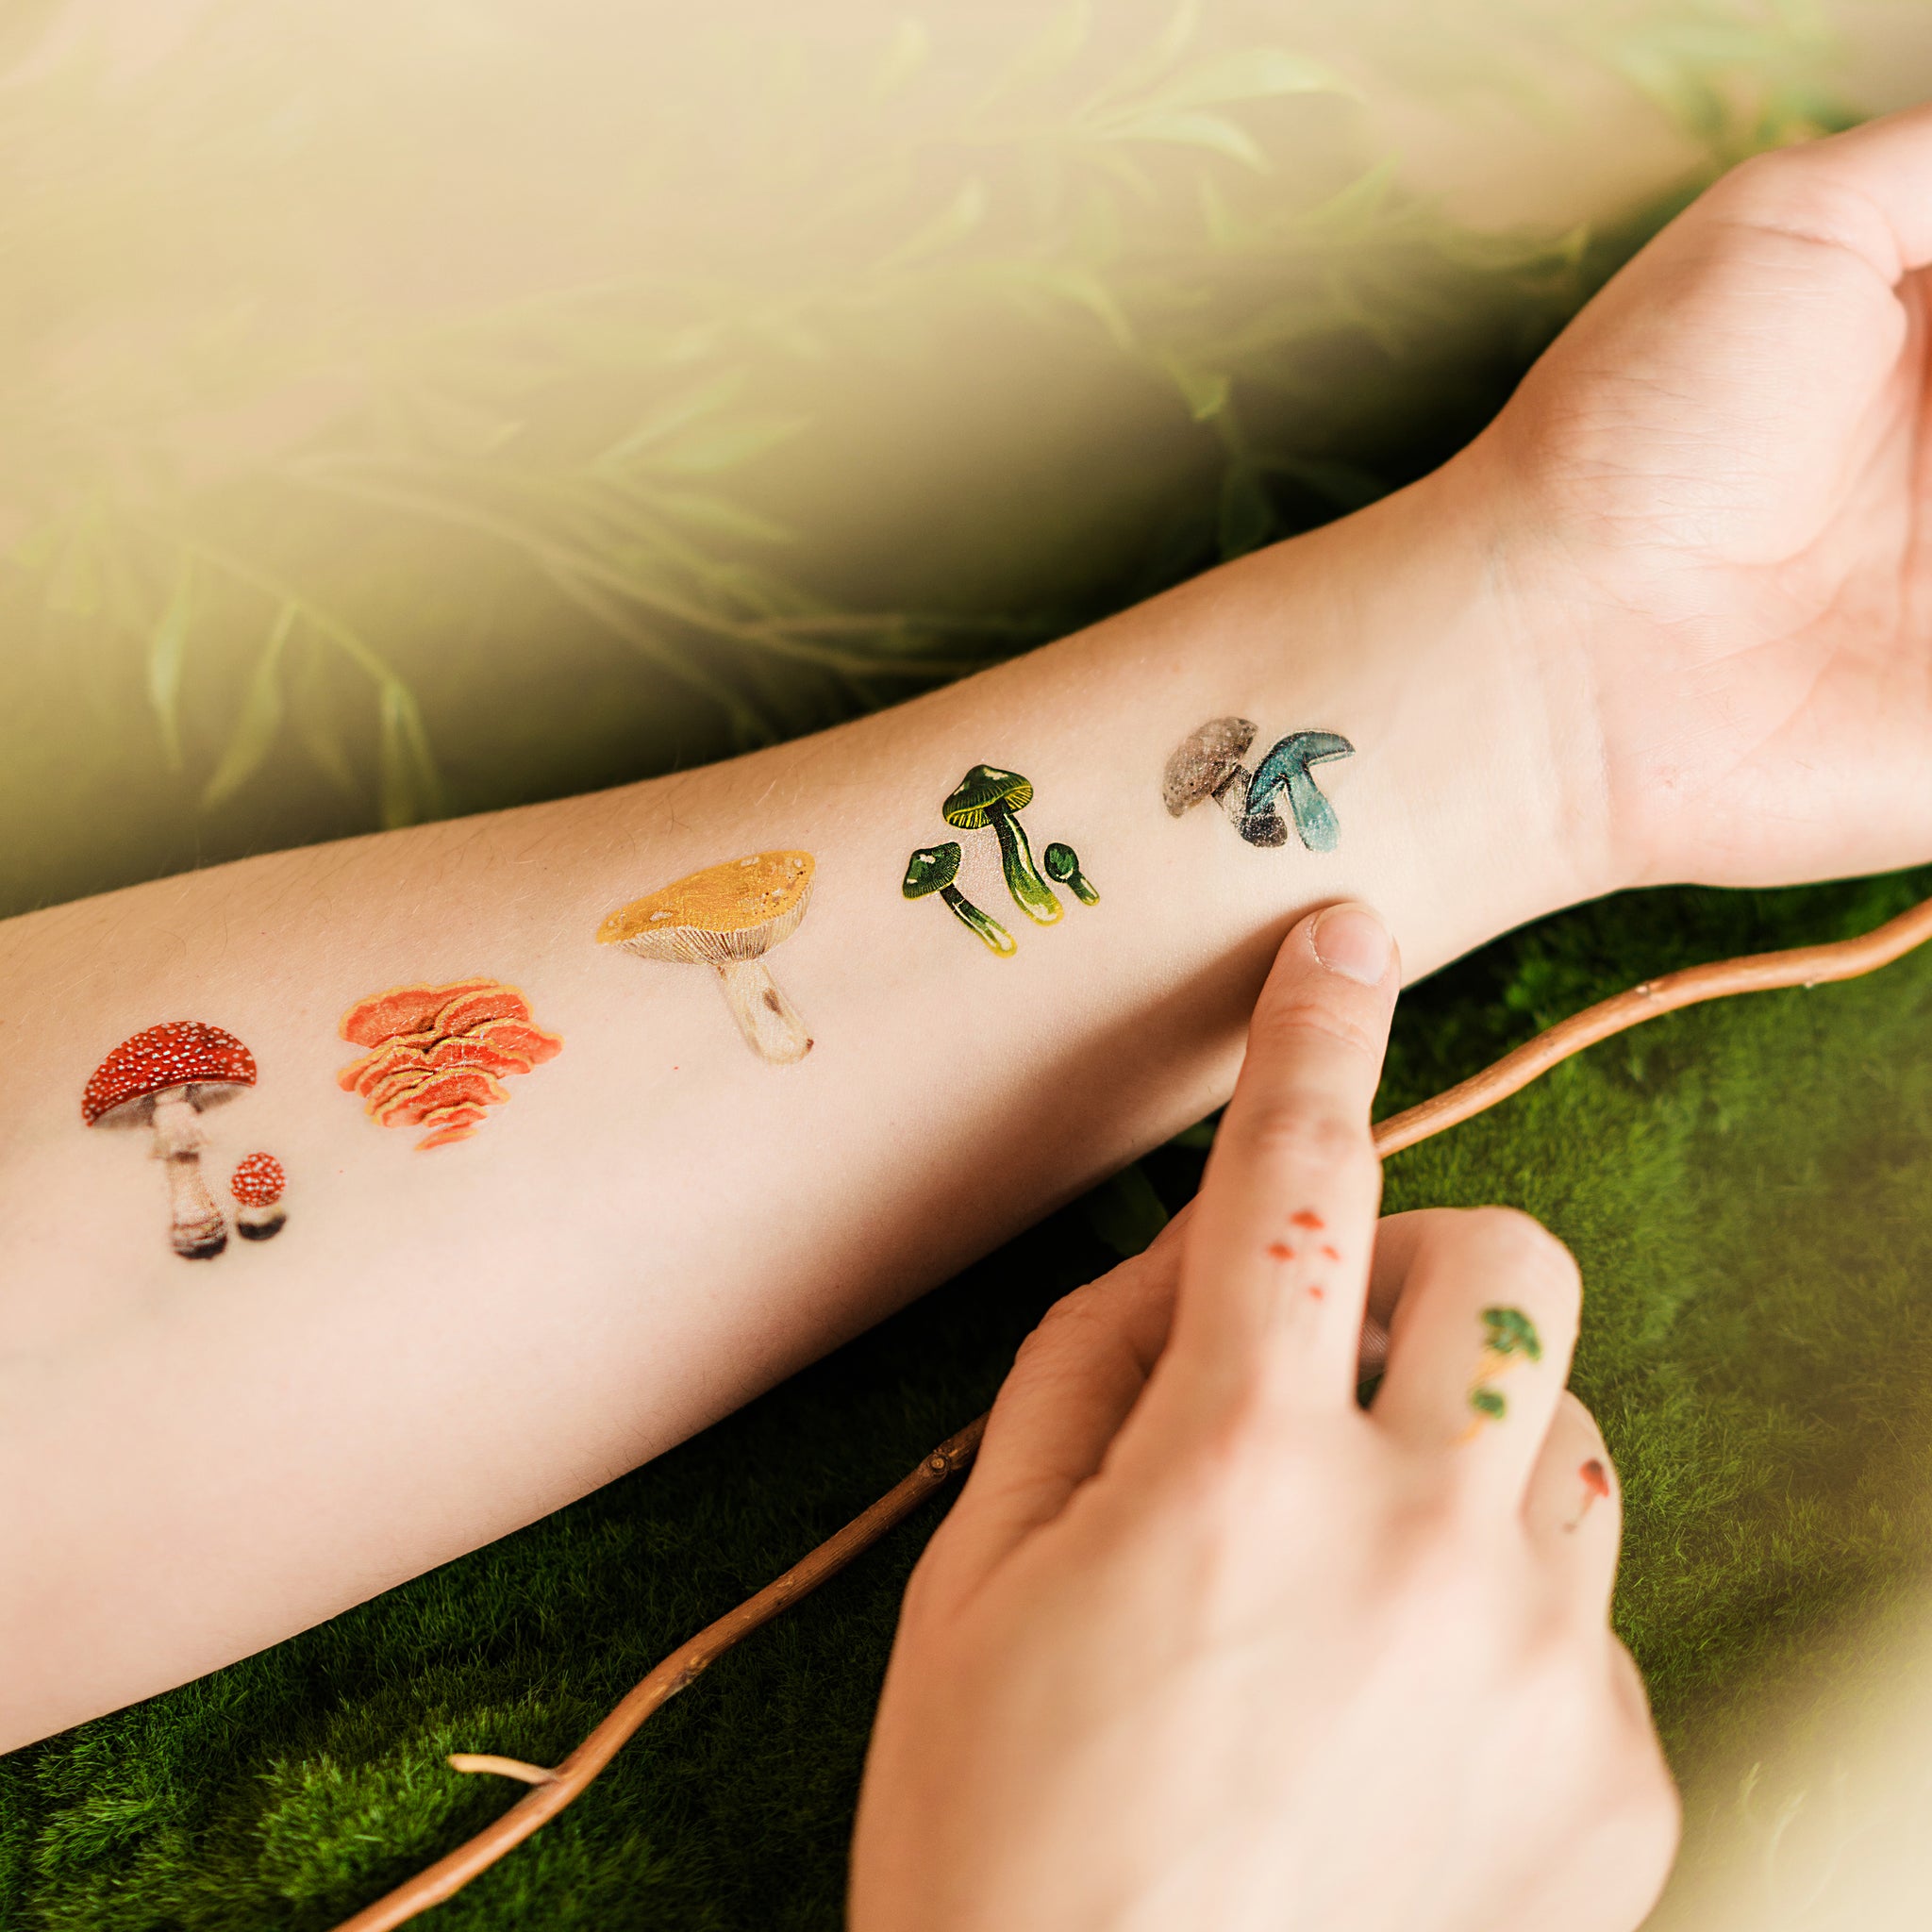 Colorful mushroom tattoos